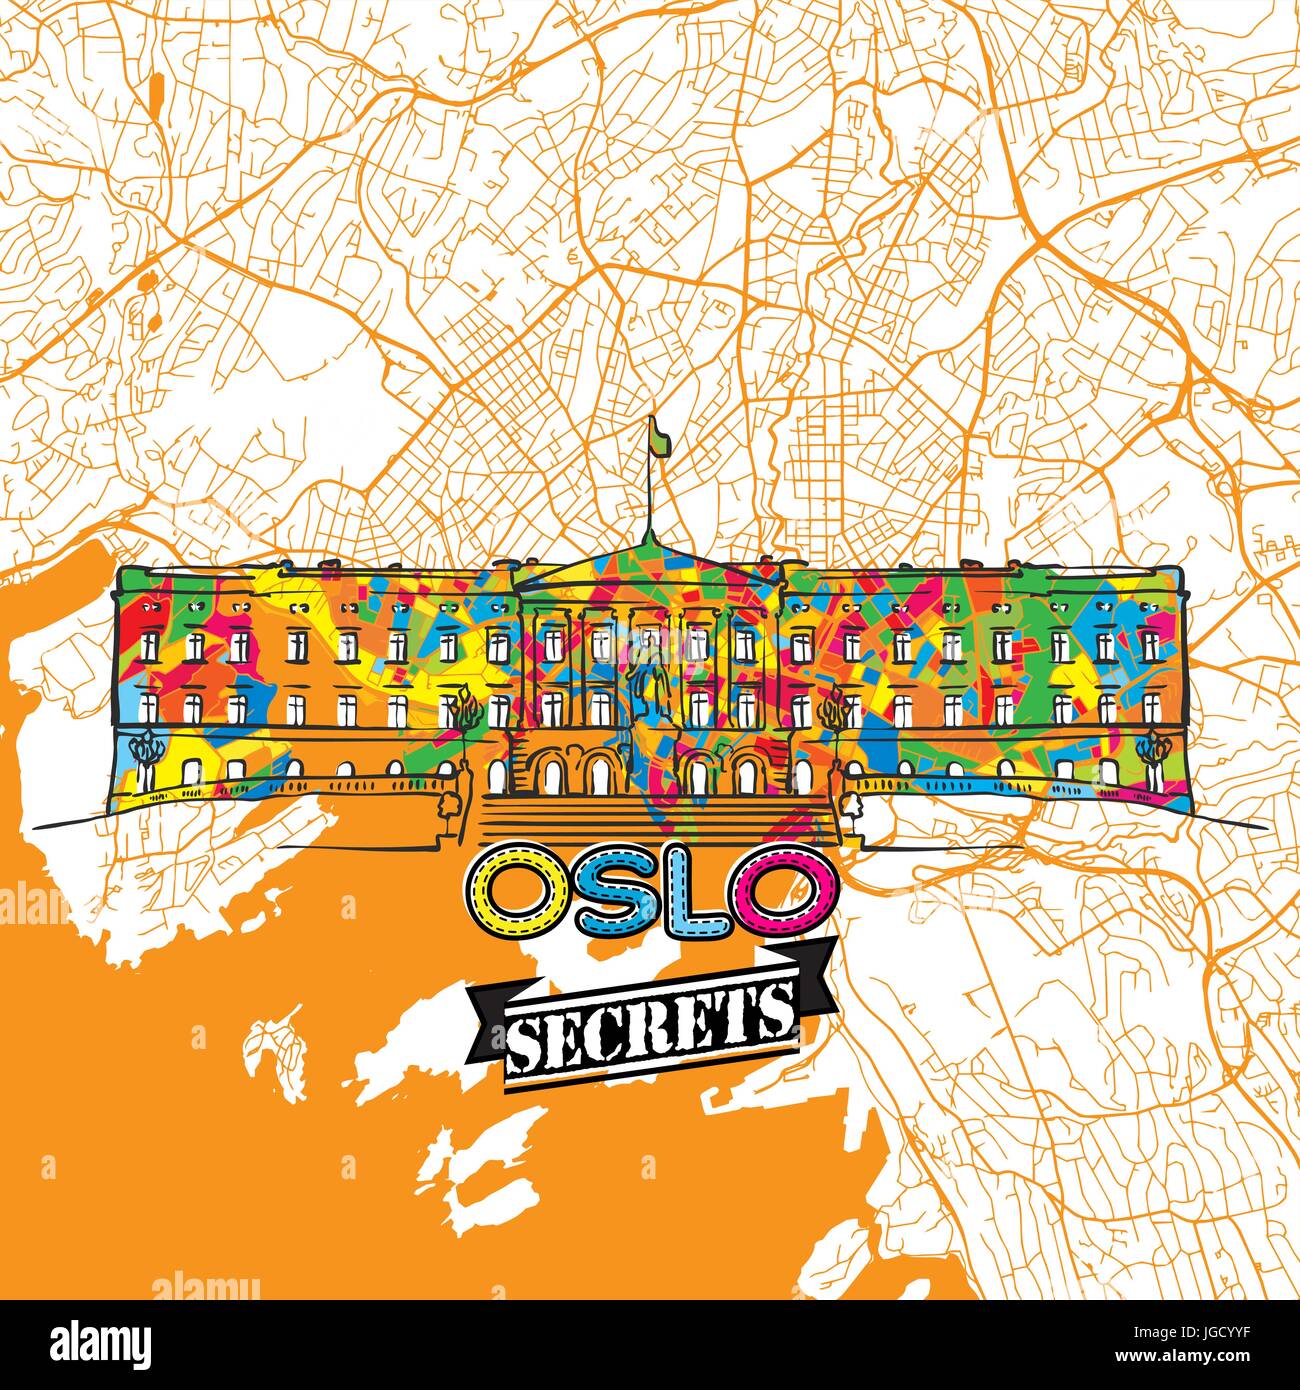 Oslo Reisen Geheimnisse Kunst-Karte für die Zuordnung von Experten und Reiseführer. Handgemachte Stadt Logo, Typo-Abzeichen und Hand gezeichnete Vektorbild auf Top sind gruppiert und m Stock Vektor